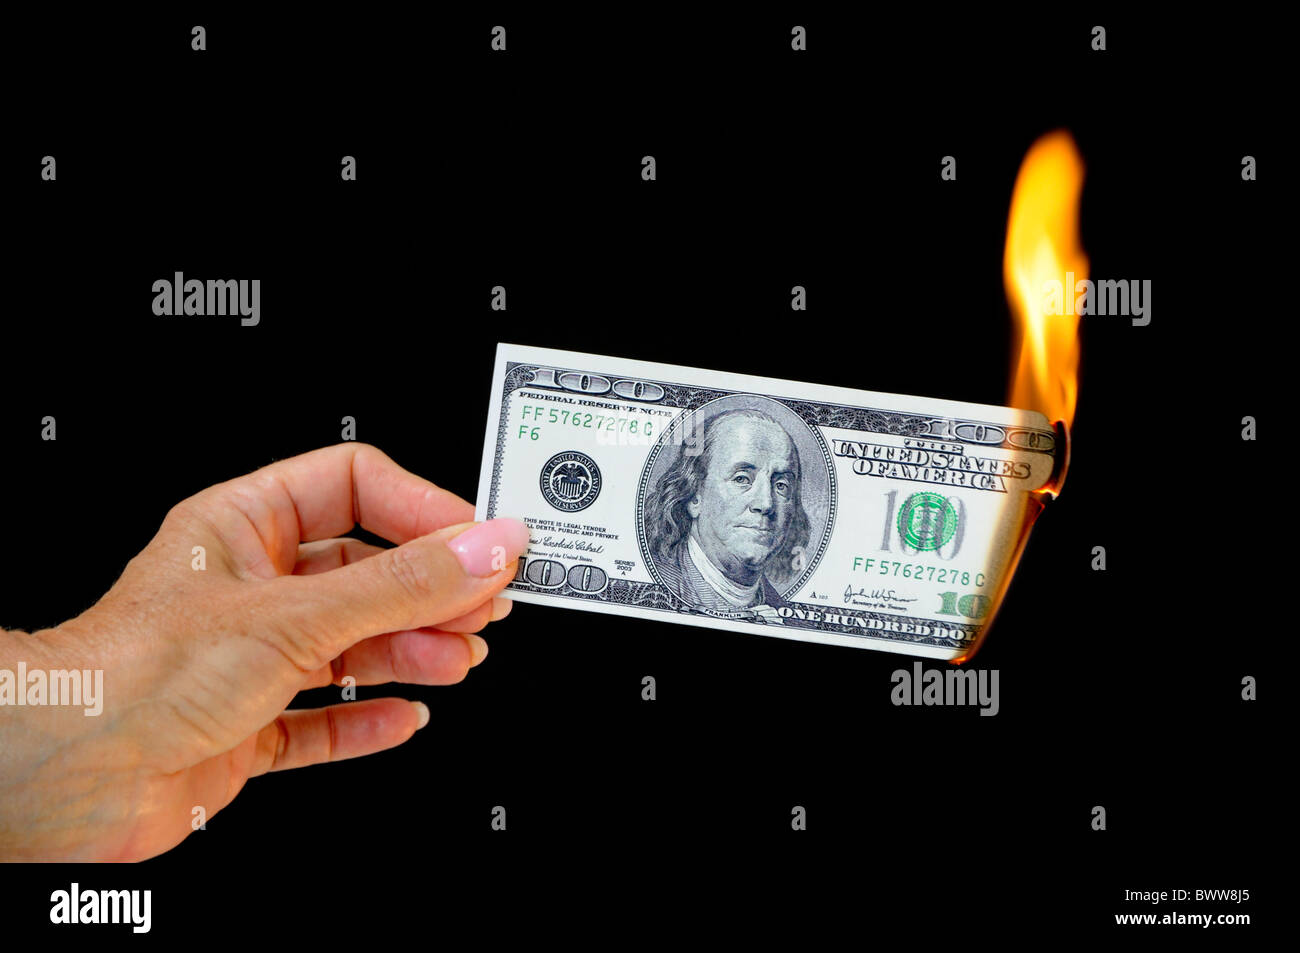 Nota dinero bill 100 cien dólares llama fuego quemar dinero destruir inflación amortización financi roto Foto de stock